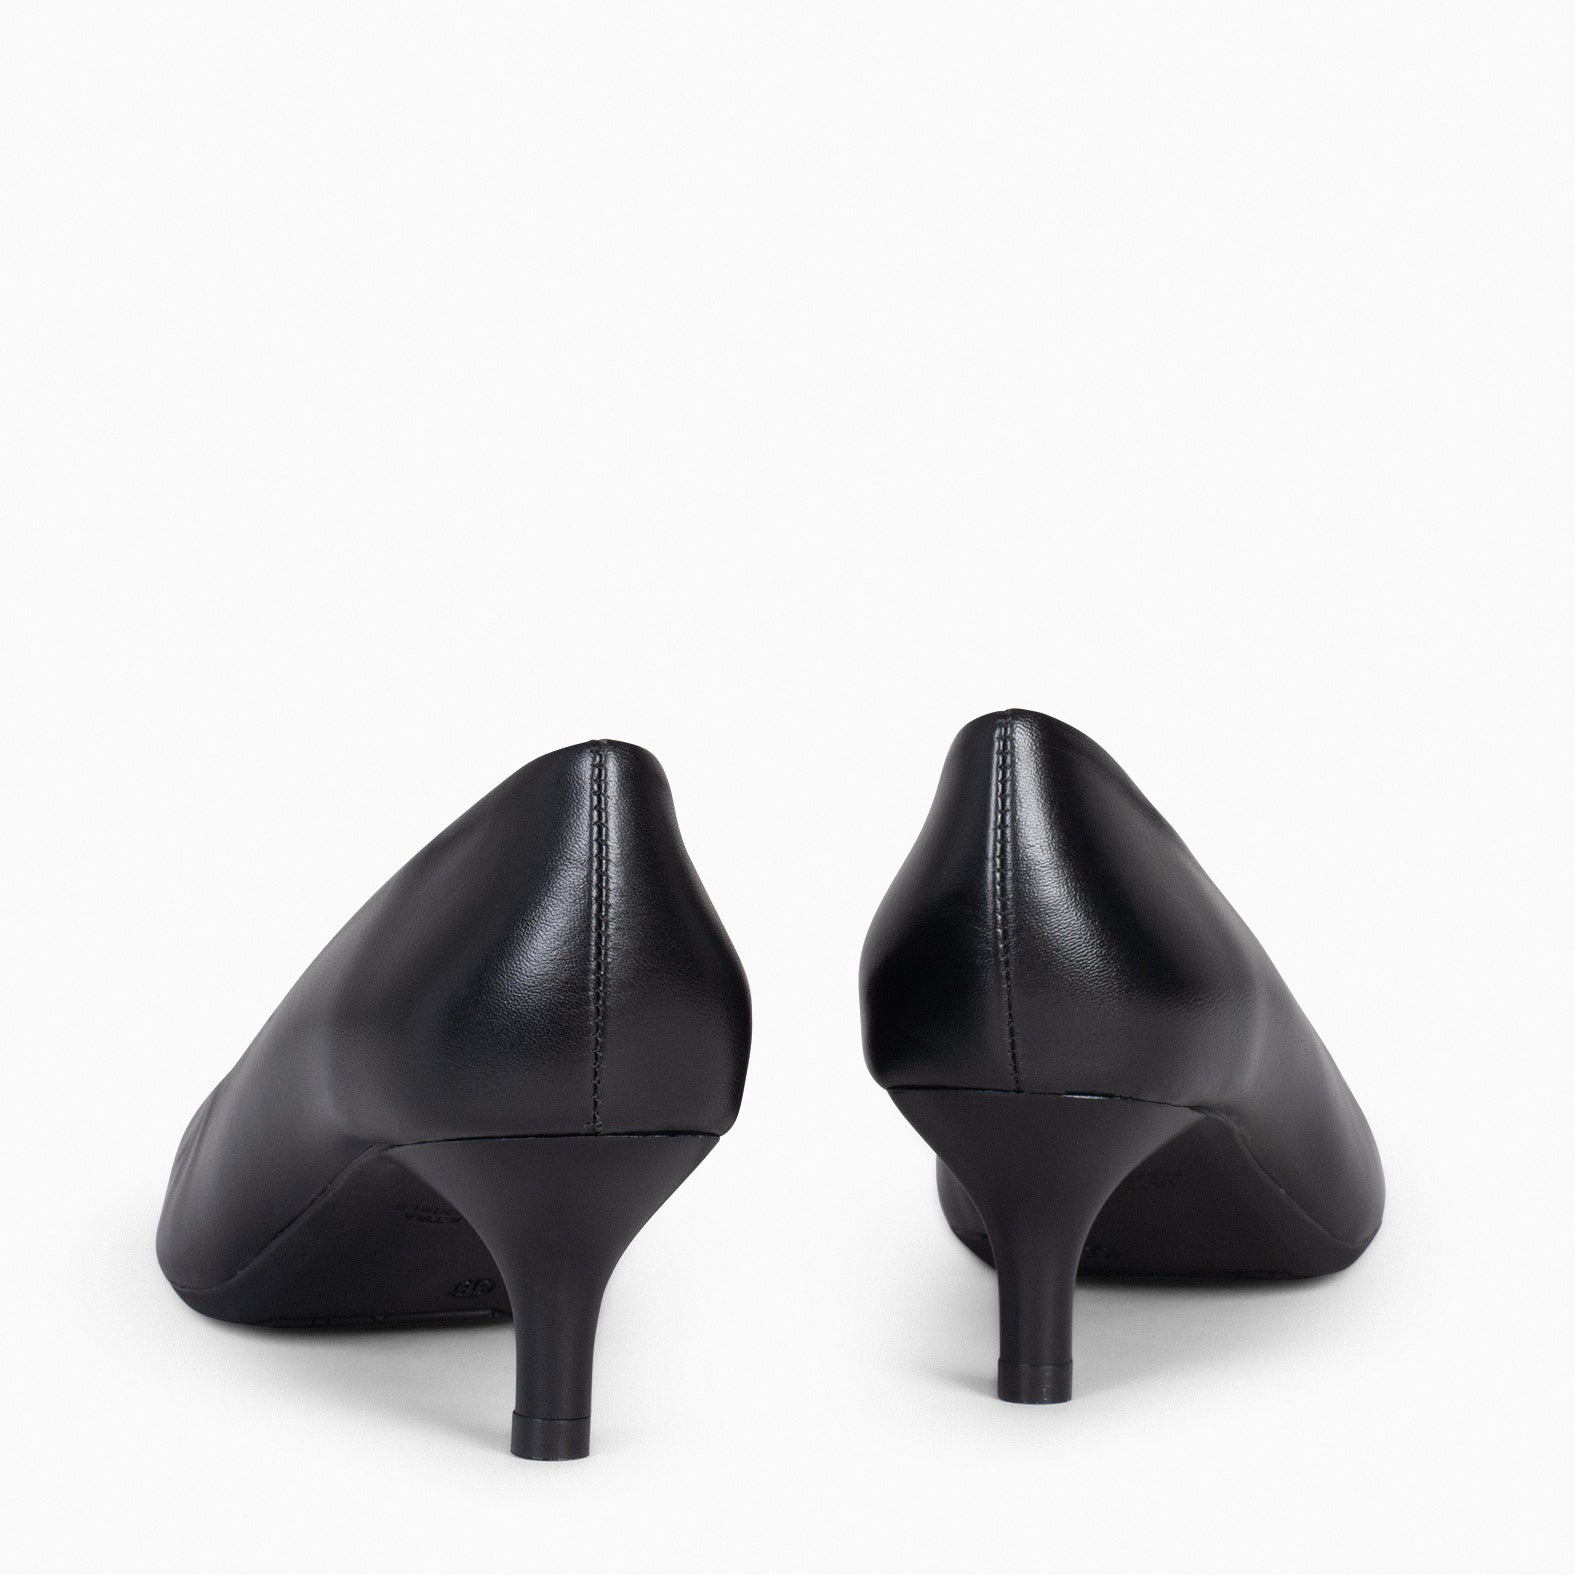 URBAN KITTEN – BLACK nappa leather kitten heels